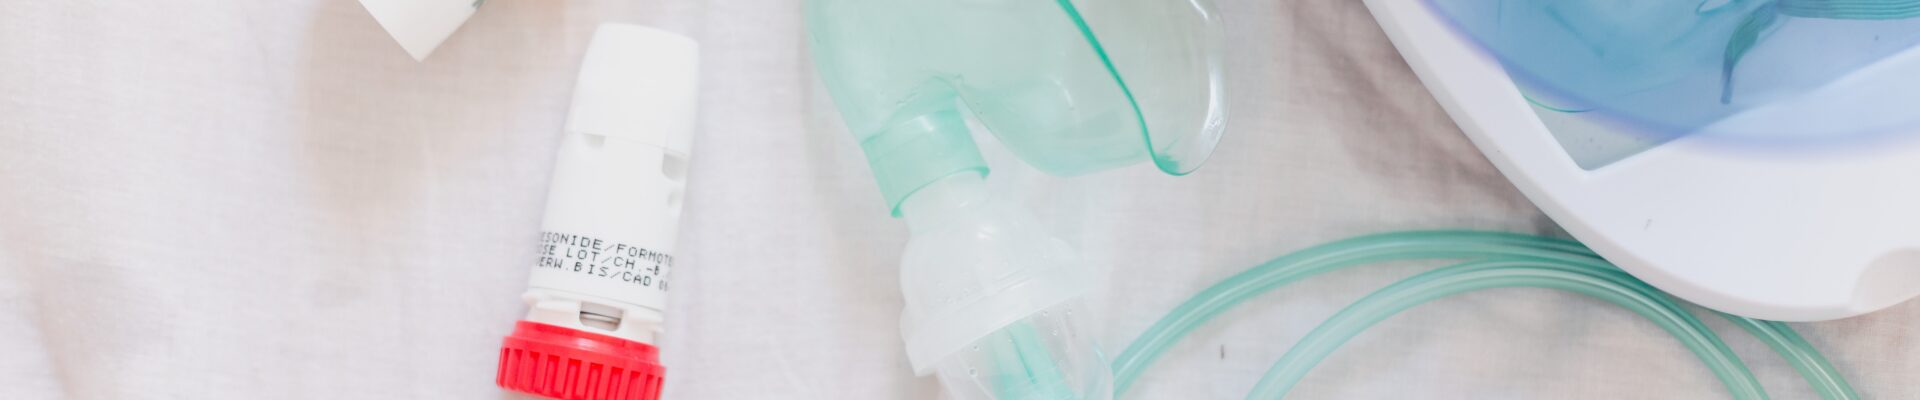 Monitoraggio dell’aderenza terapeutica nell’asma e nelle BPCO: terzo report della ricerca